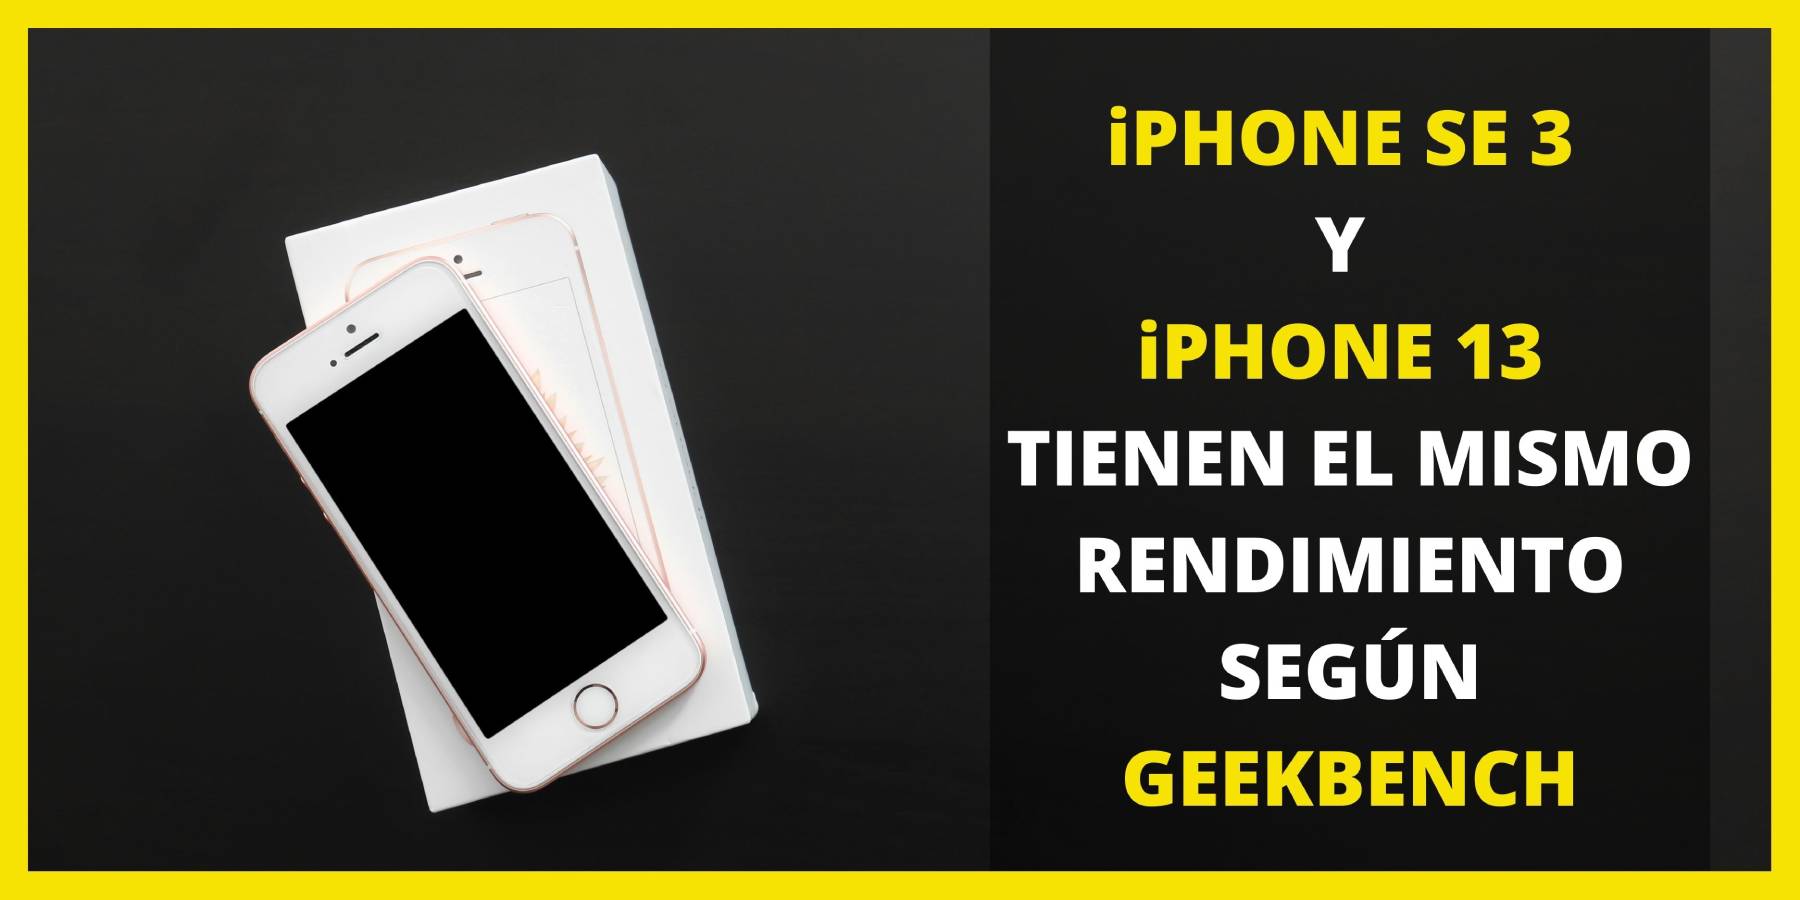 iphone se 3 y iphone 13 tienen el mismo rendimiento segÚn geekbench (1)